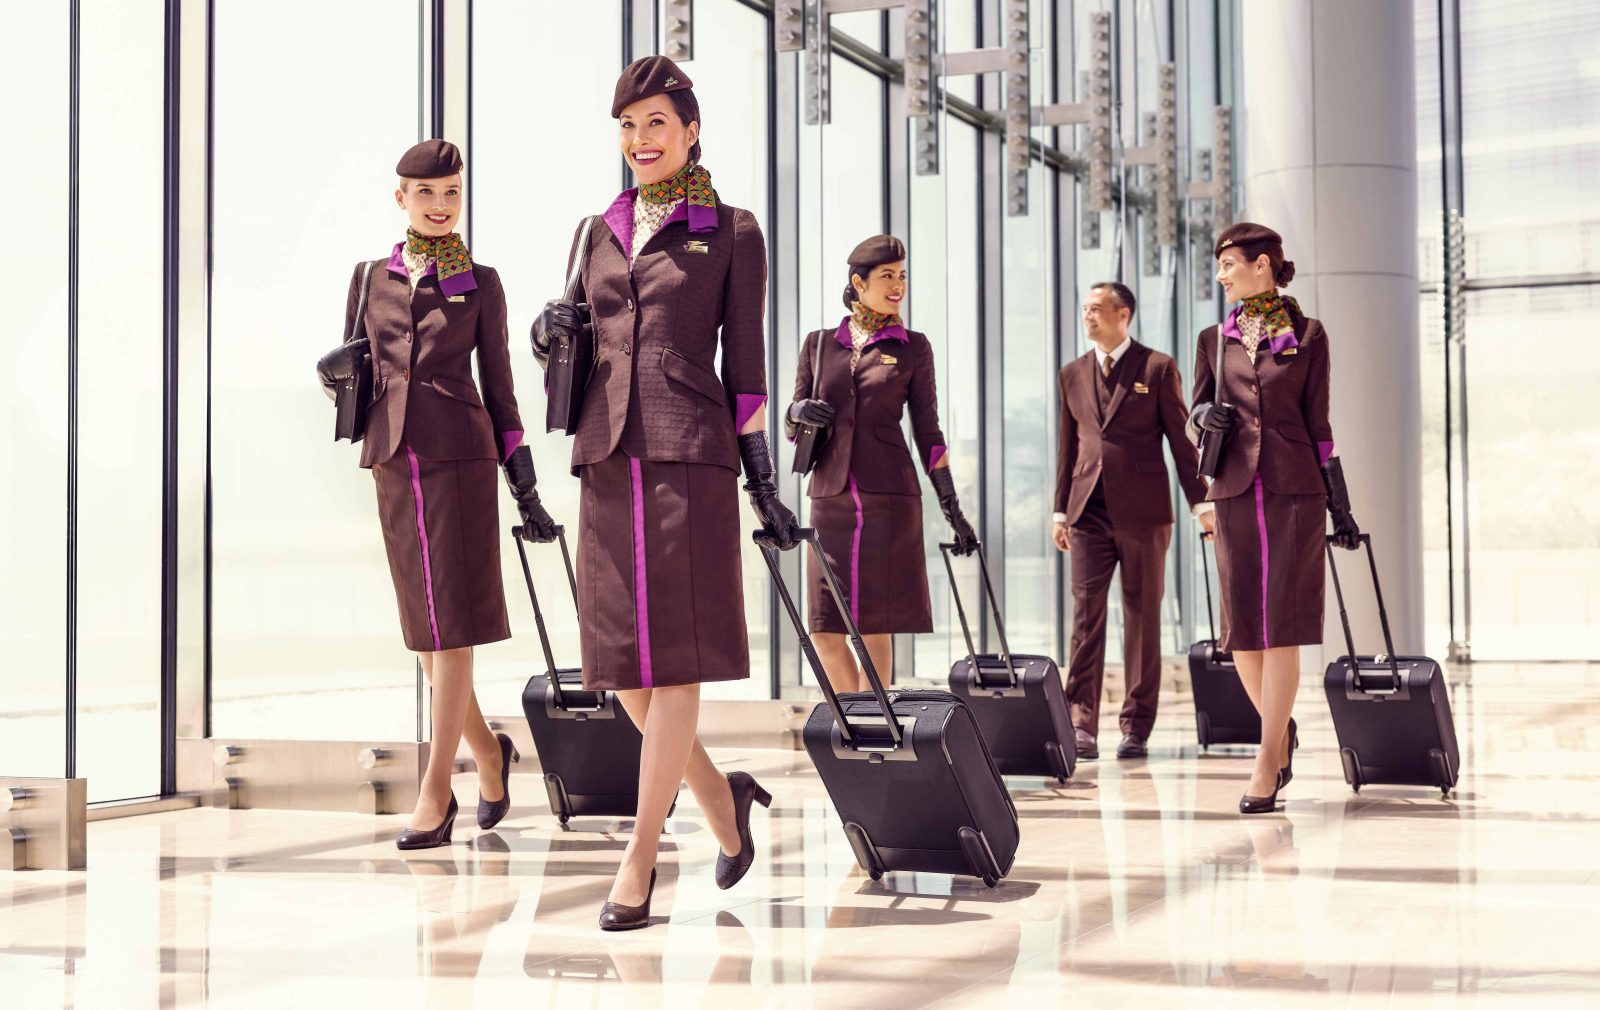 Etihad Airways nommé meilleur service aux employés pour une compagnie aérienne au Moyen-Orient